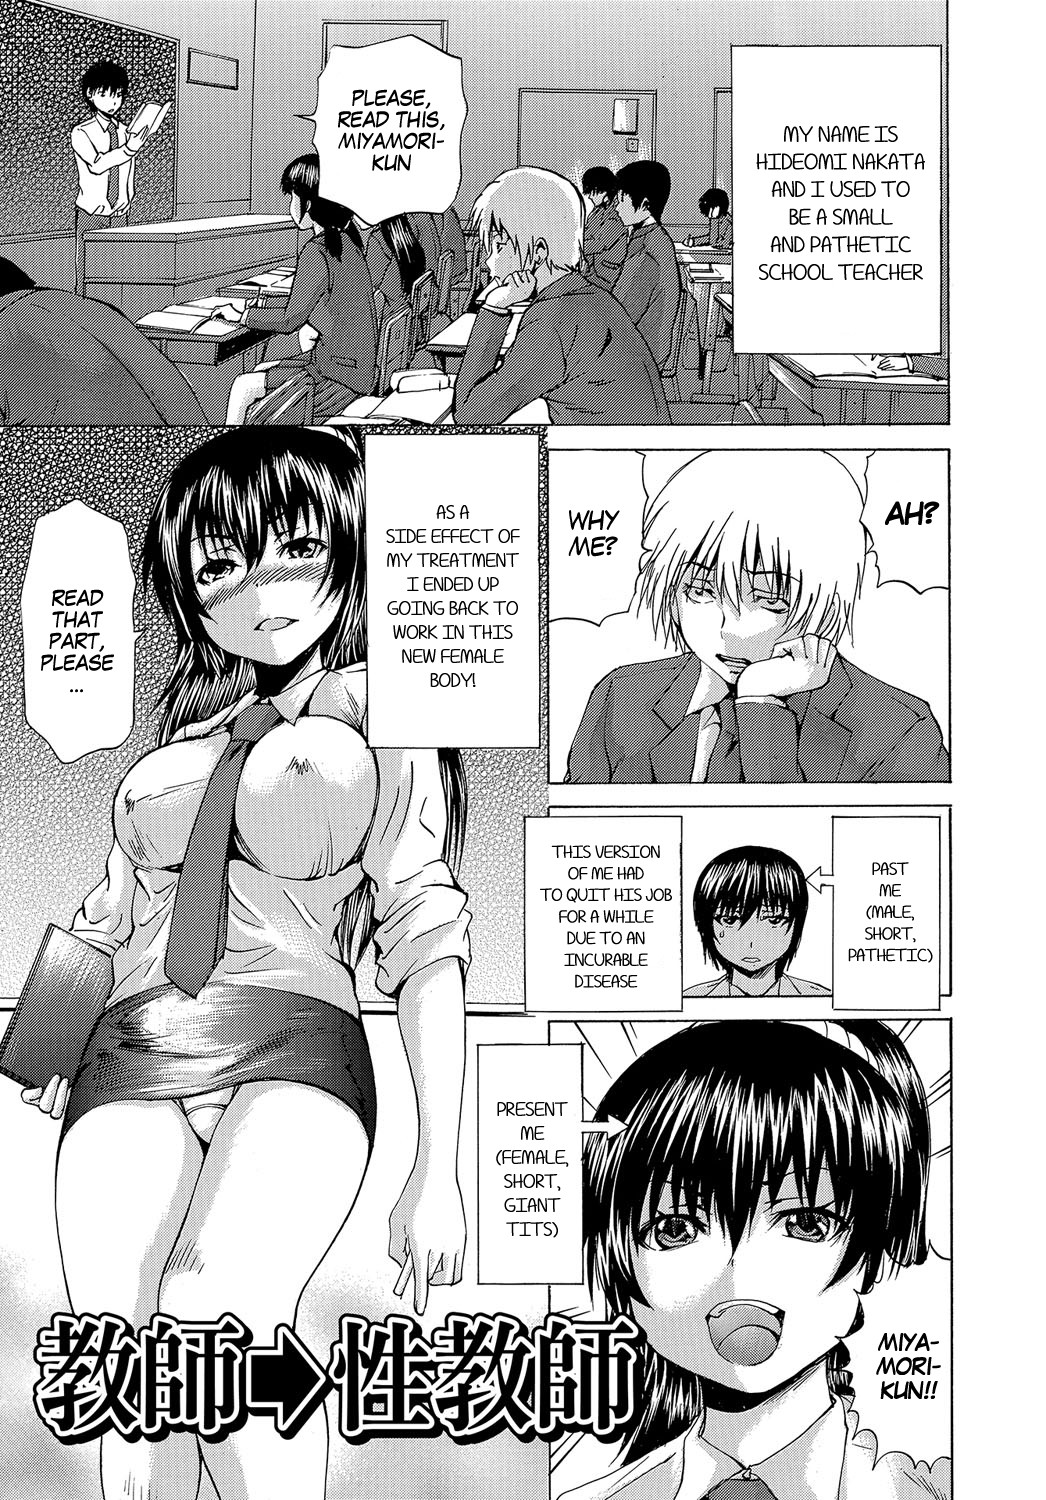 Teacher Hentai Manga